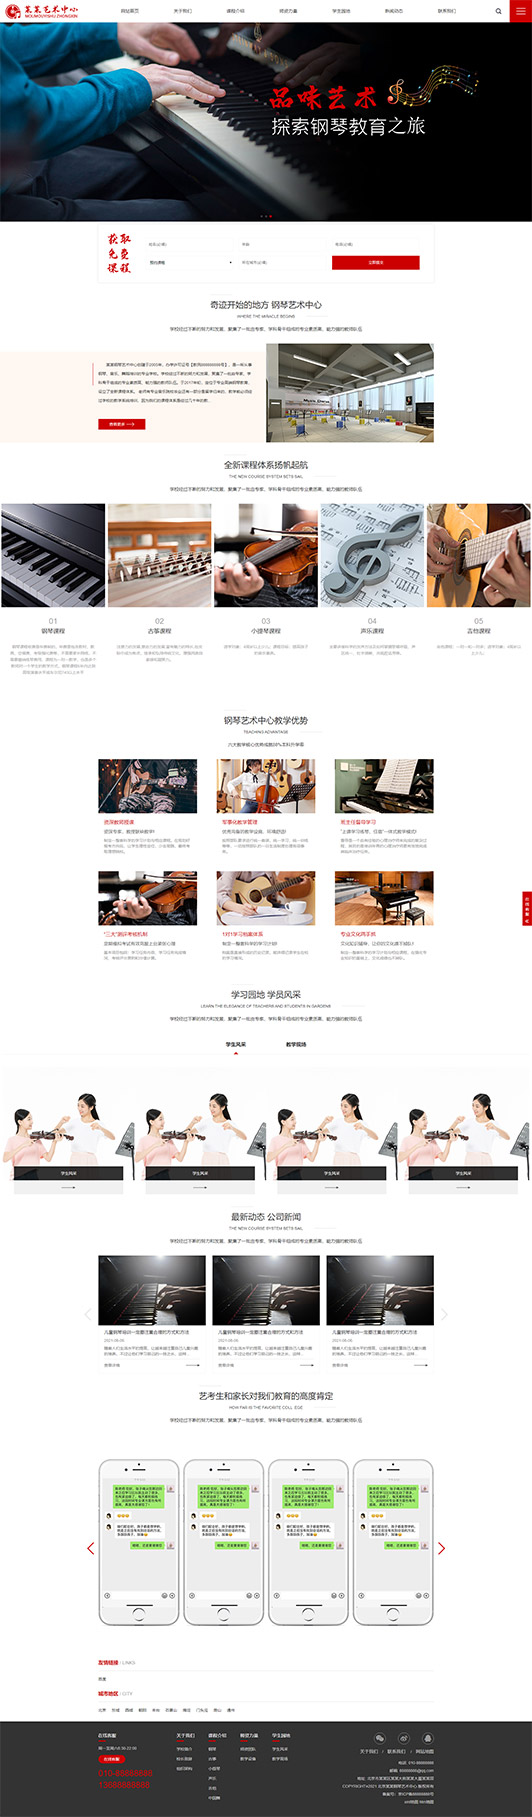 十堰钢琴艺术培训公司响应式企业网站